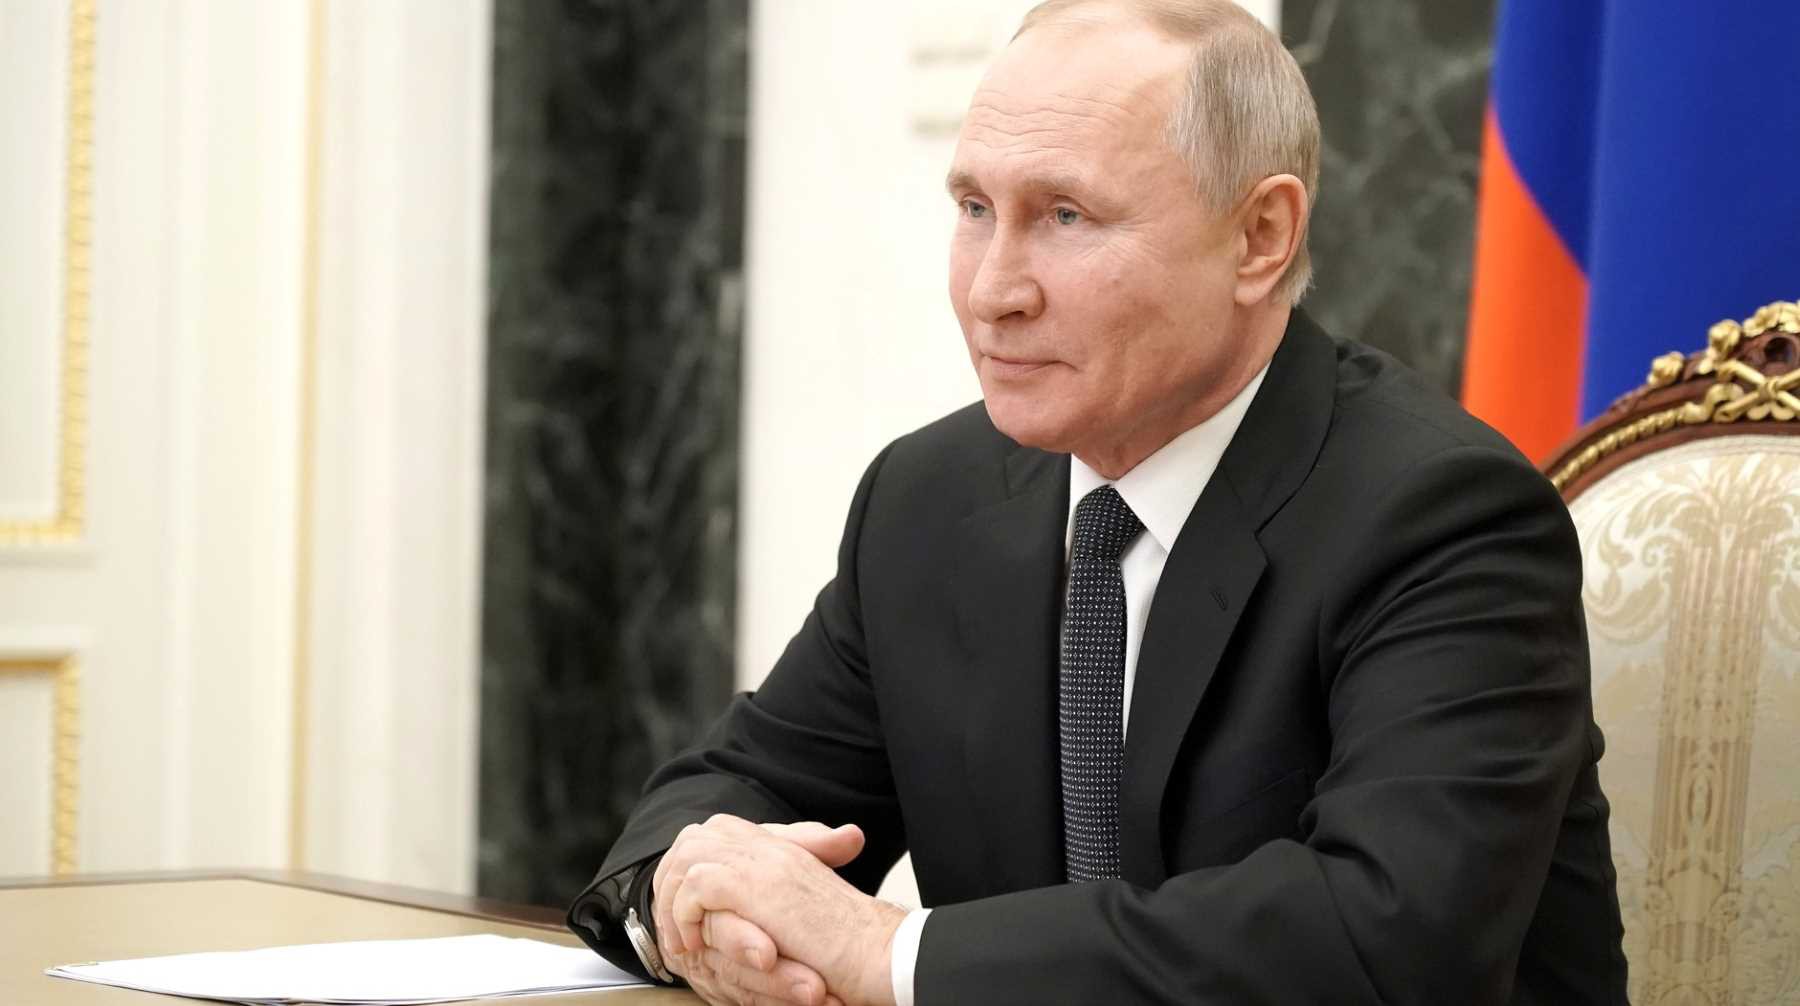 РБК: Путин назначил нового первого замглаву ФСБ